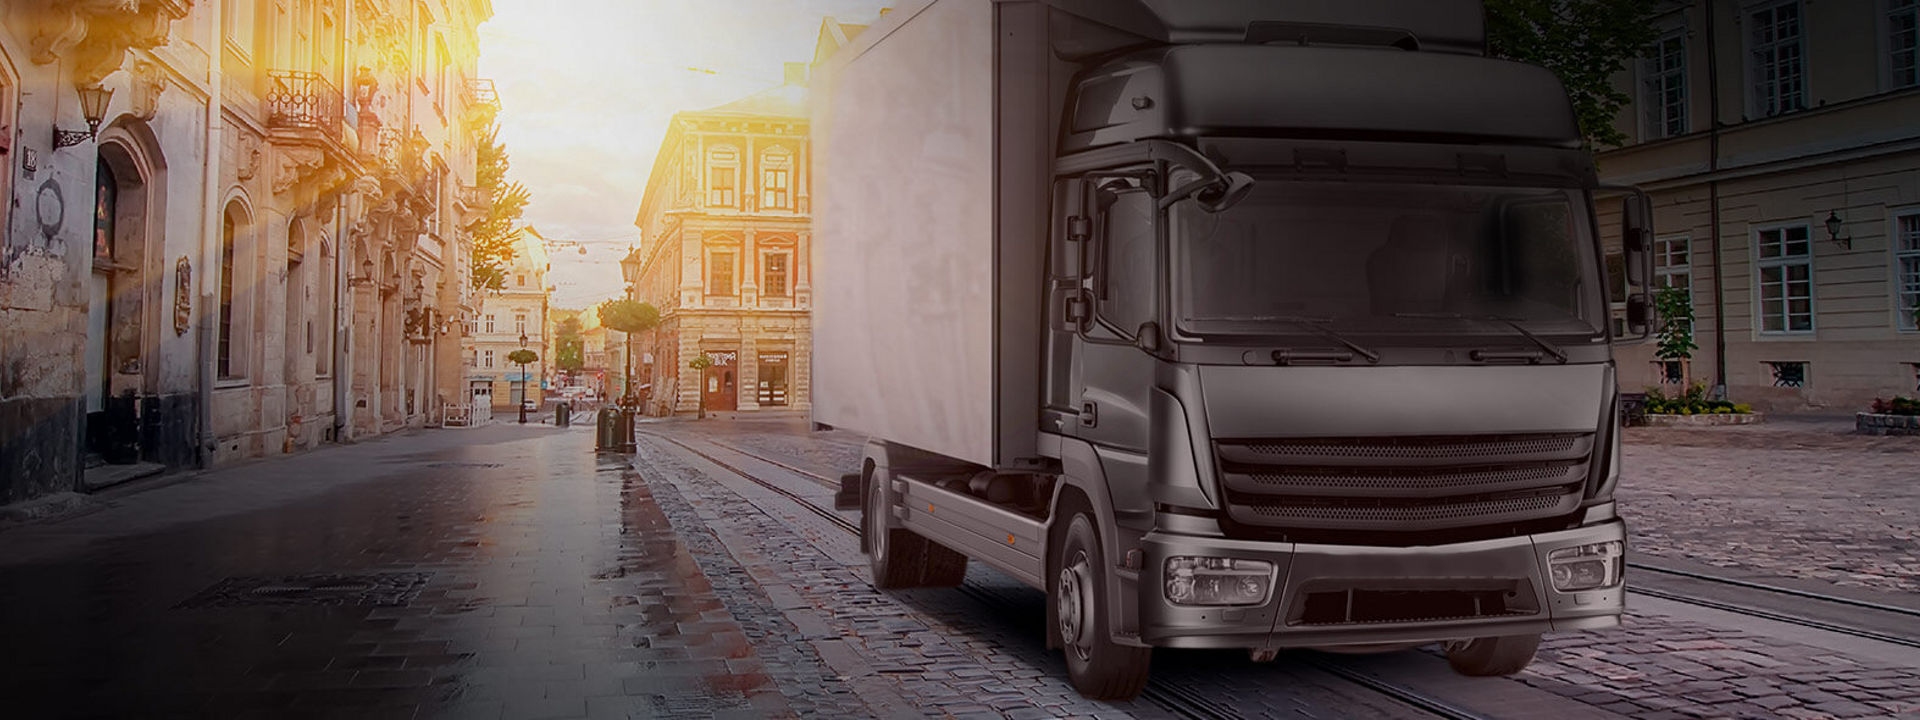 Cette image montre un camion léger/moyen équipé de pneus Bridgestone en route pour livrer des marchandises en centre ville.